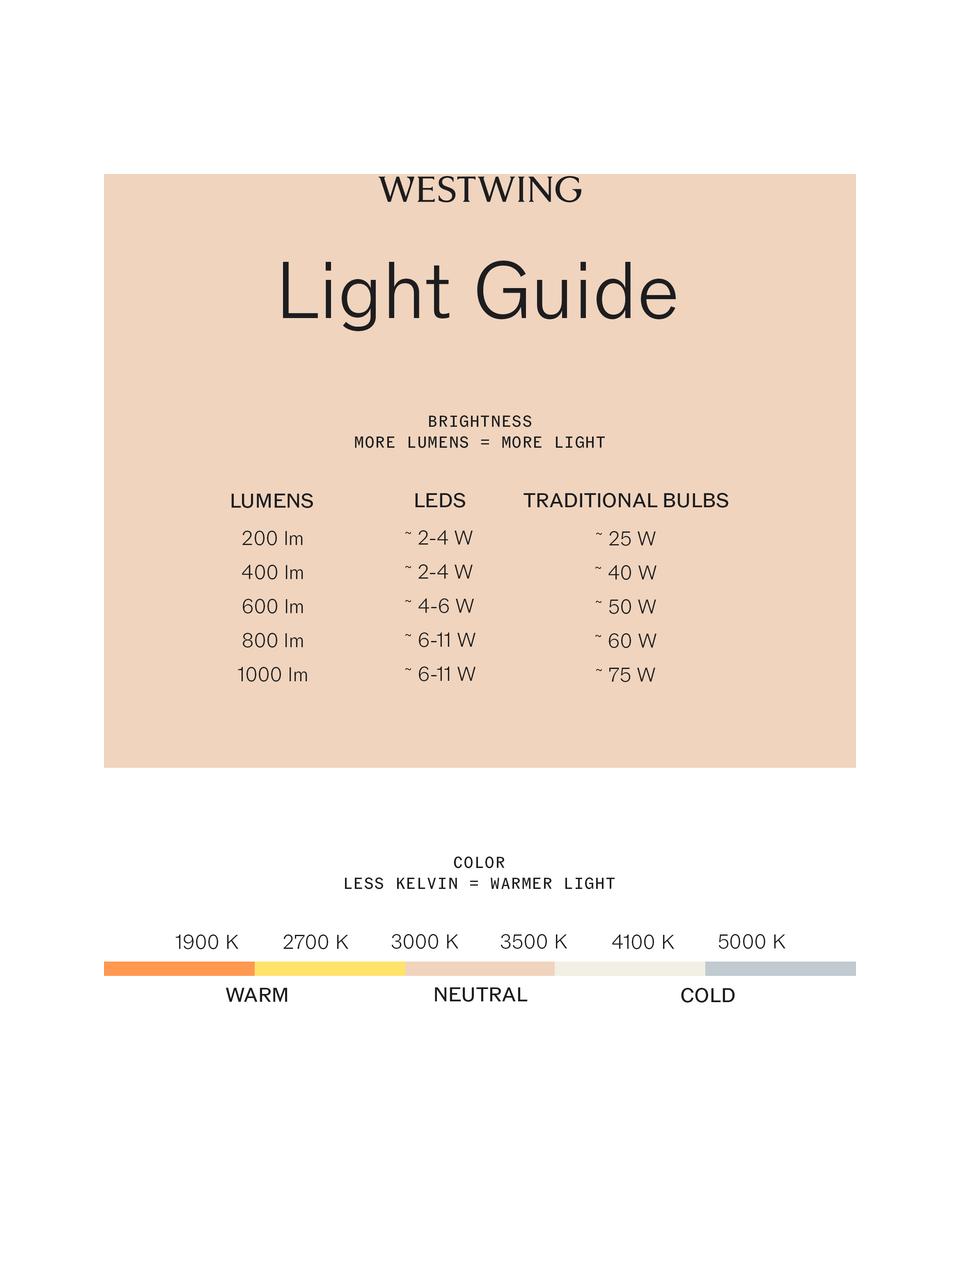 Handgefertigte LED-Tischlampe Regina, Lampenschirm: Glas, Weiß, Ø 49 x H 45 cm